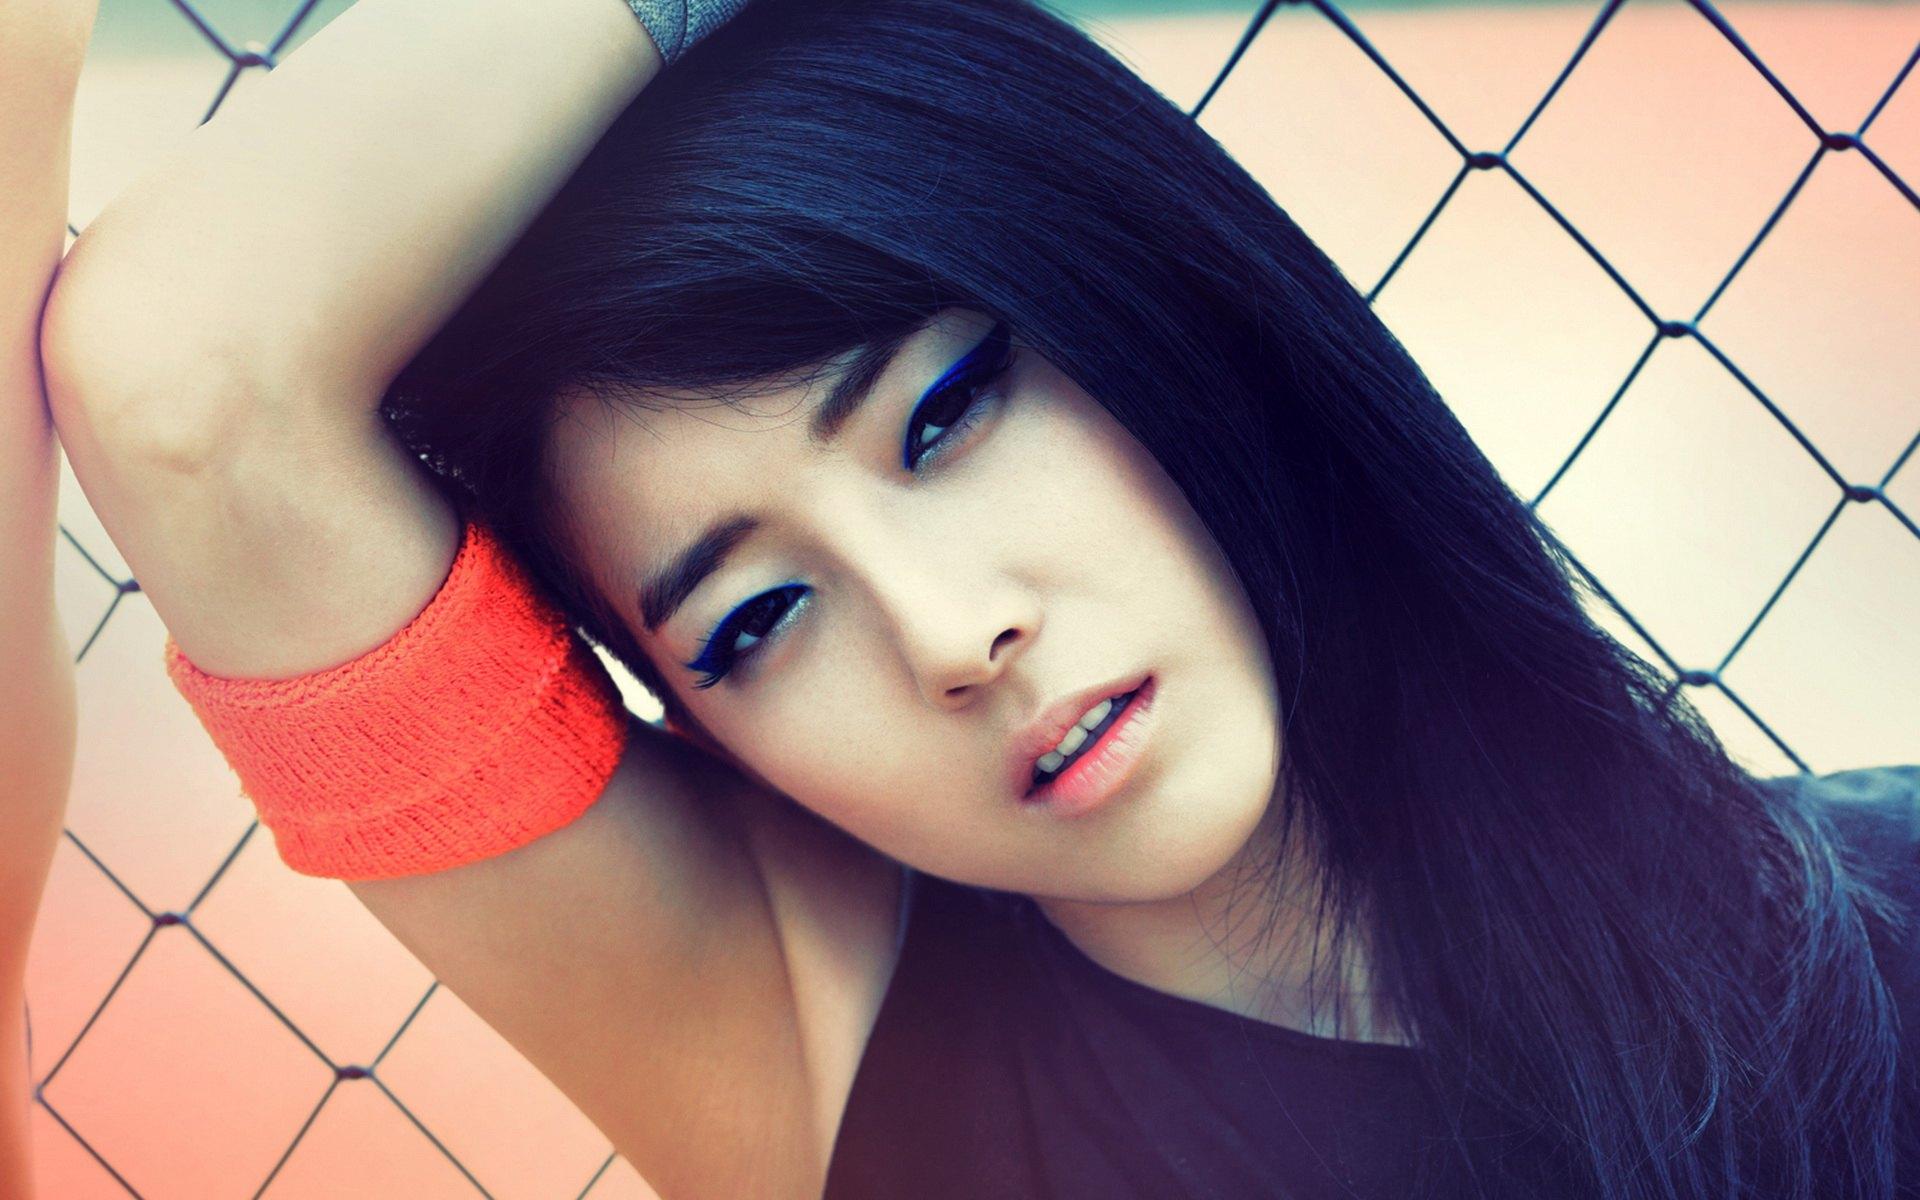 性感撩发高鼻子的韩国美女高清手机壁纸-美女-3g壁纸